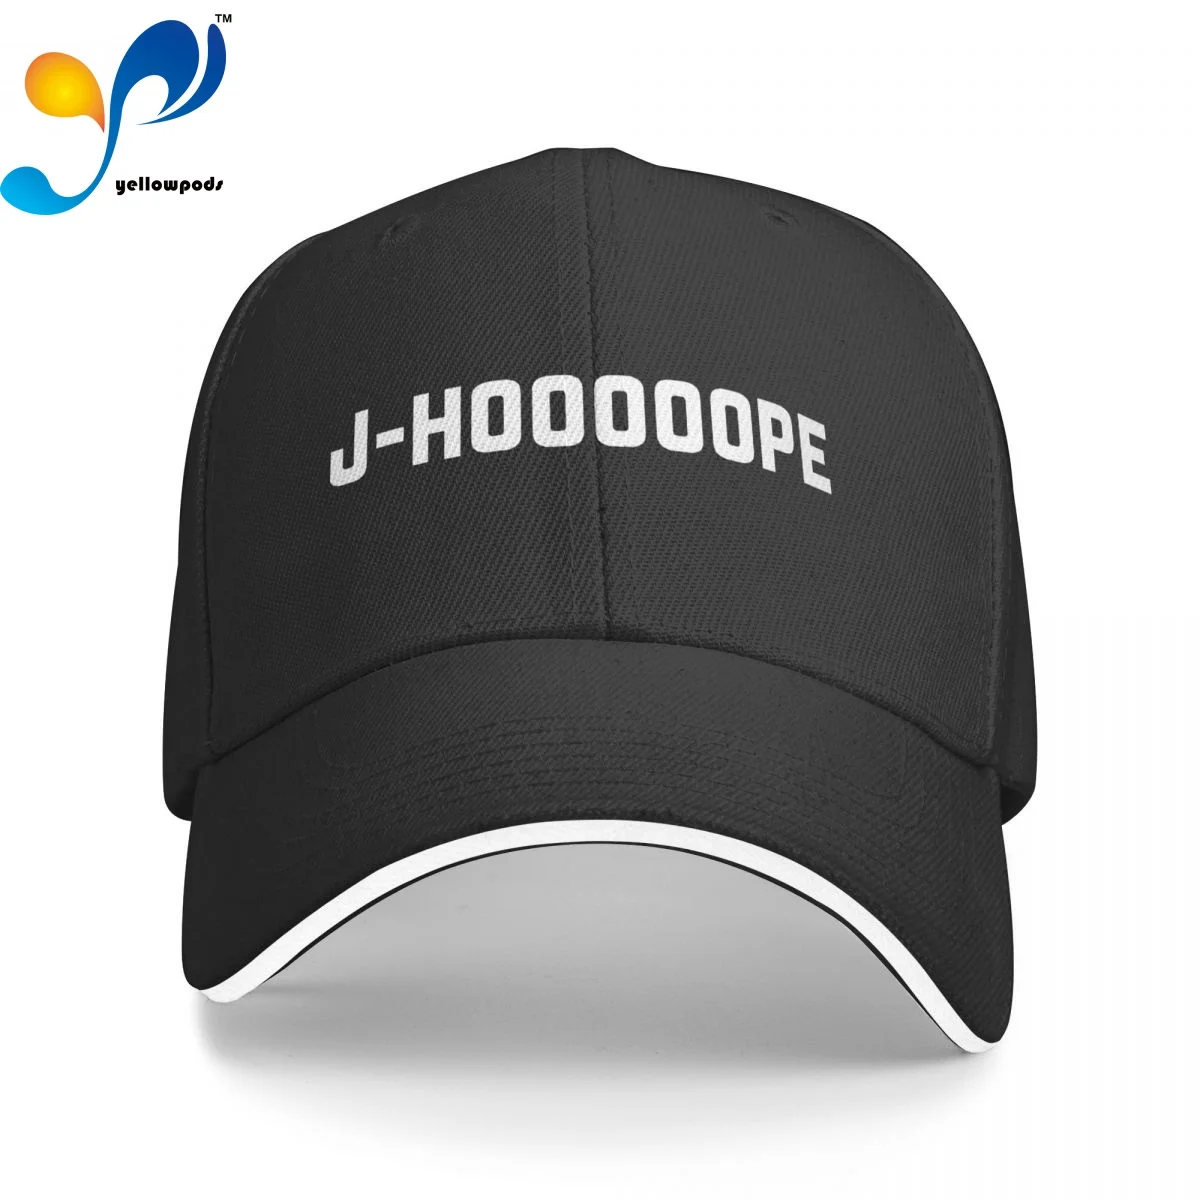 J-HOOOOOPE Бейсболка унисекс регулируемые бейсболки головные уборы для мужчин и женщин